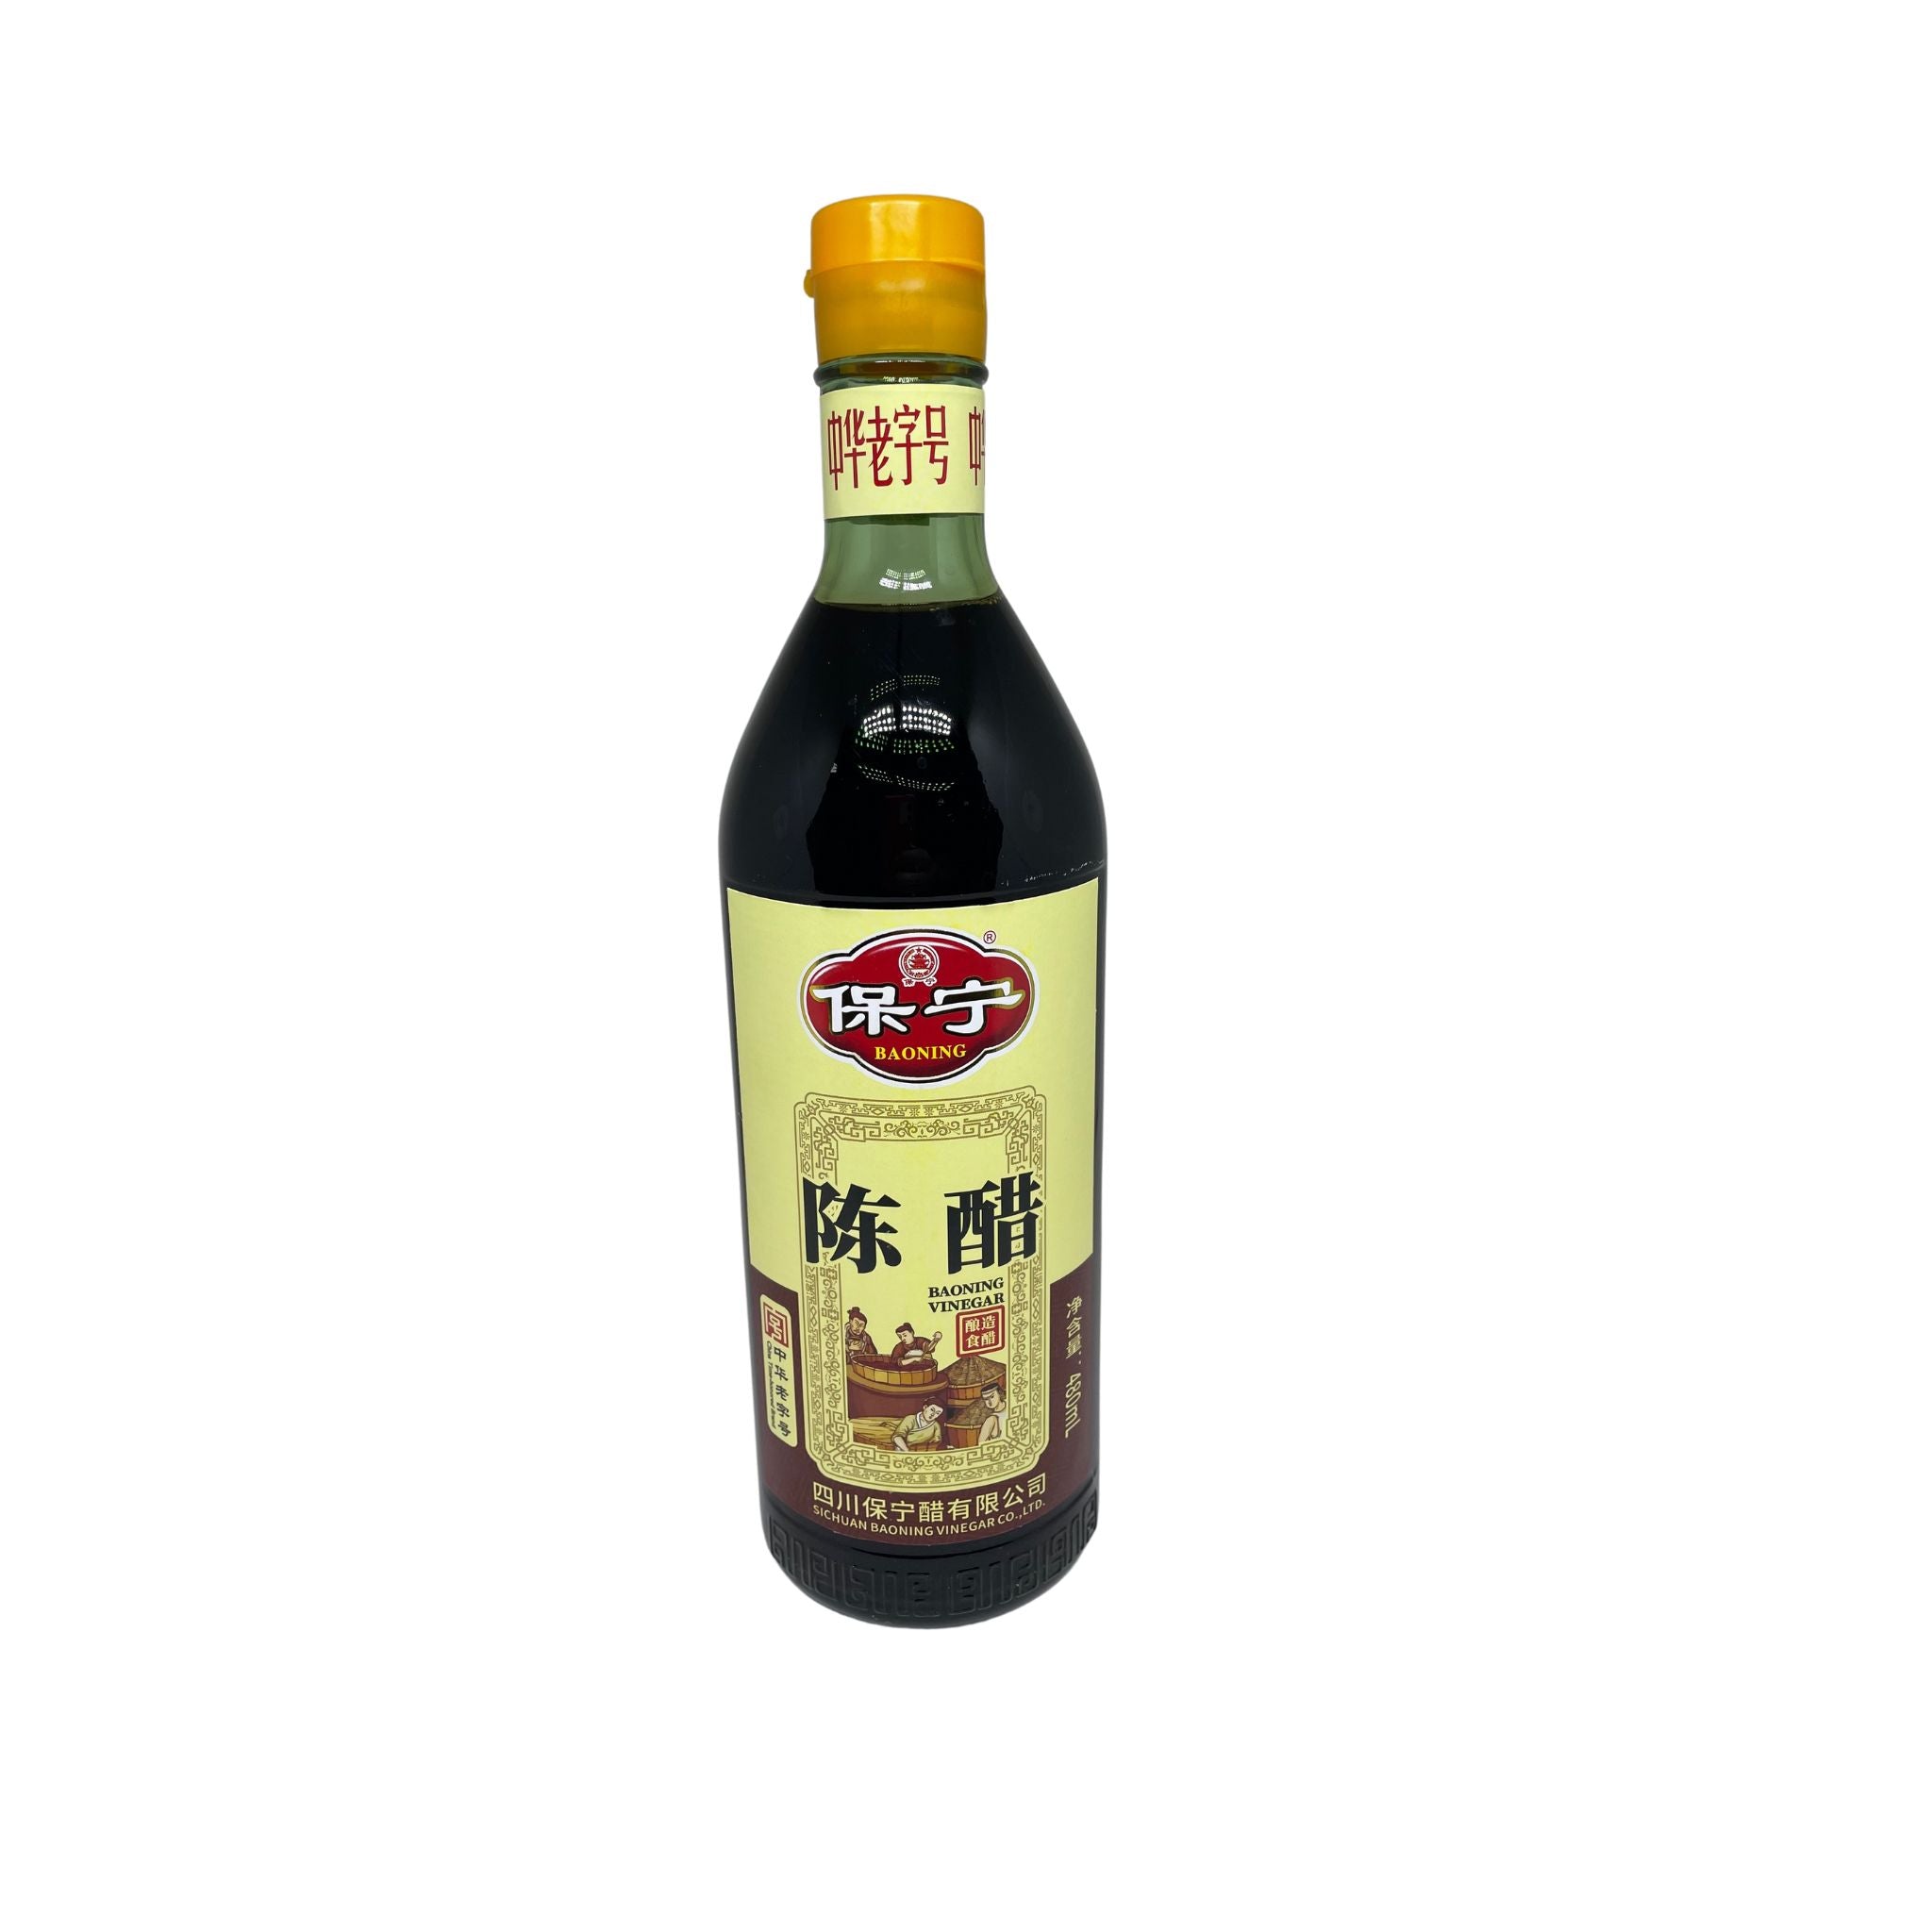 Vinagre Preto Envelhecido Sichuan Baoning 480ml